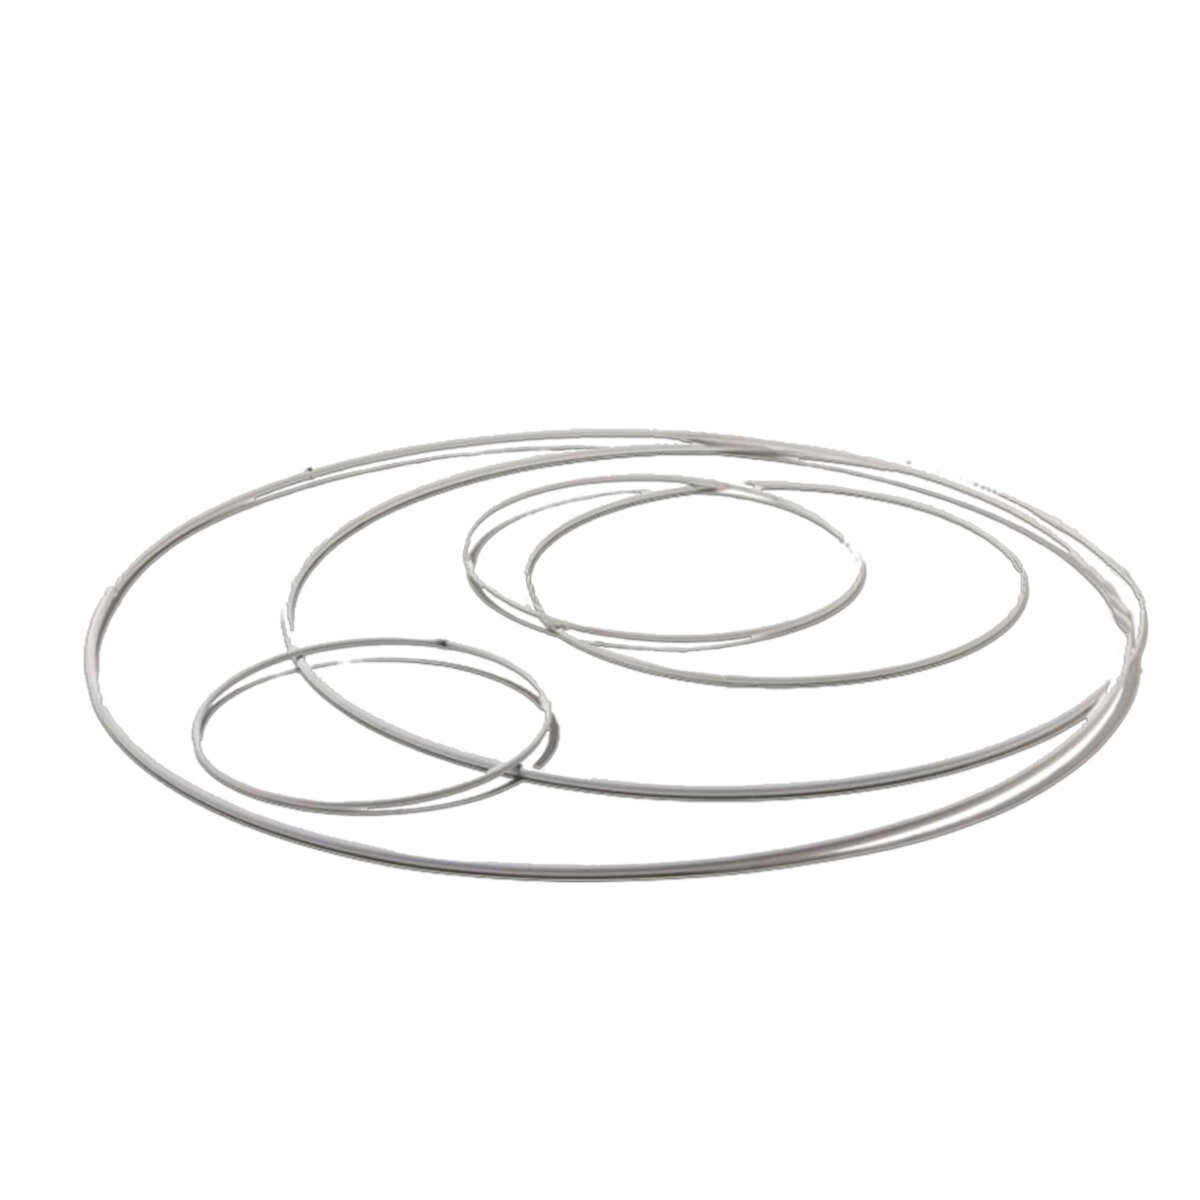 Metallring rund weiß plastifiziert, Stärke ca. 3 mm, 1 Stück